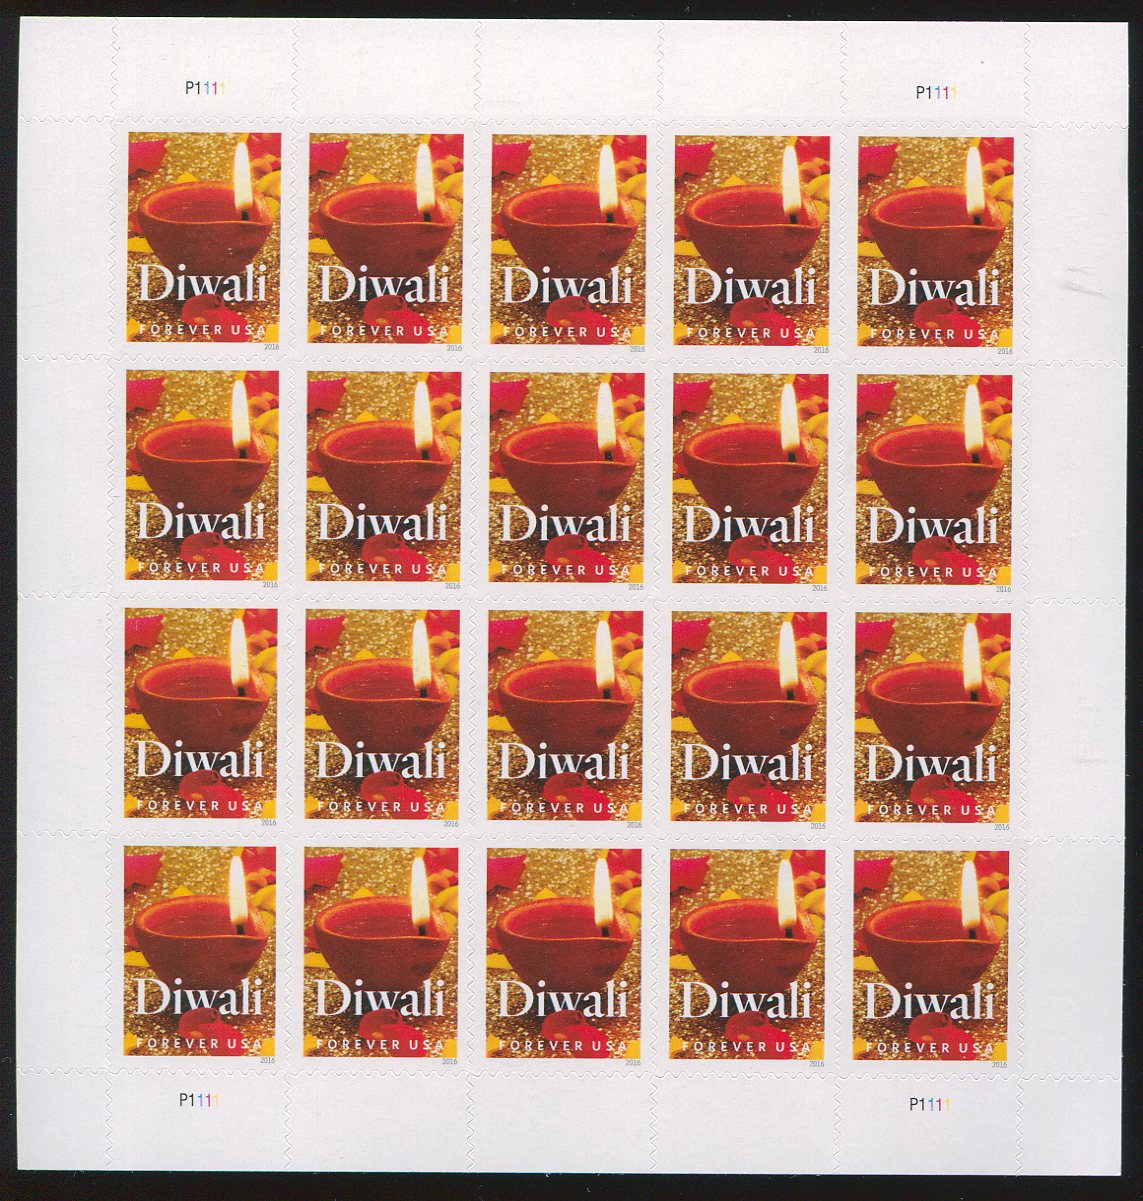 5142 Forever Diwali Mint Sheet of 20 #5142sh